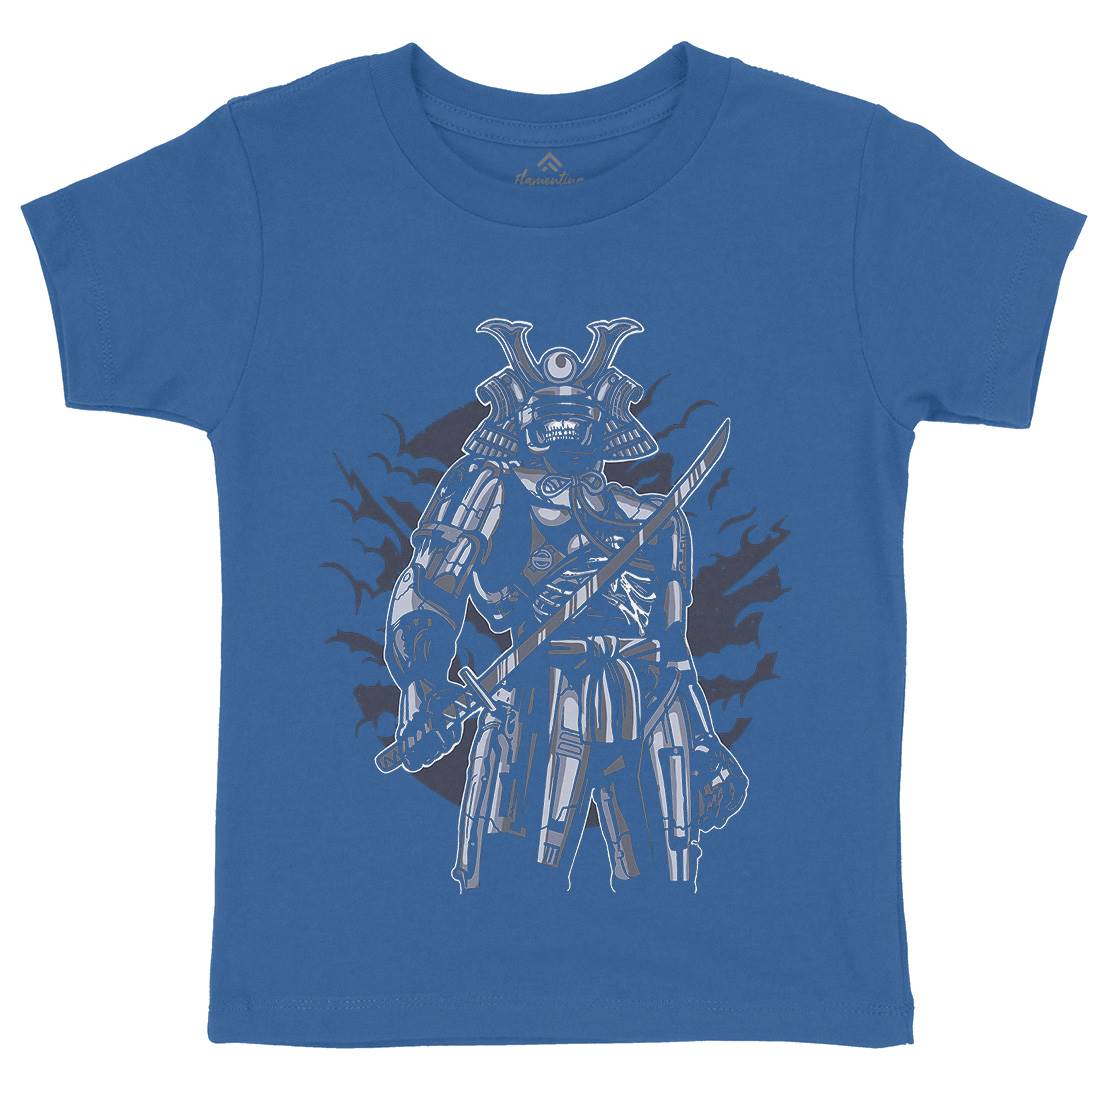 Samurai Robot Kids Crew Neck T-Shirt Warriors A569